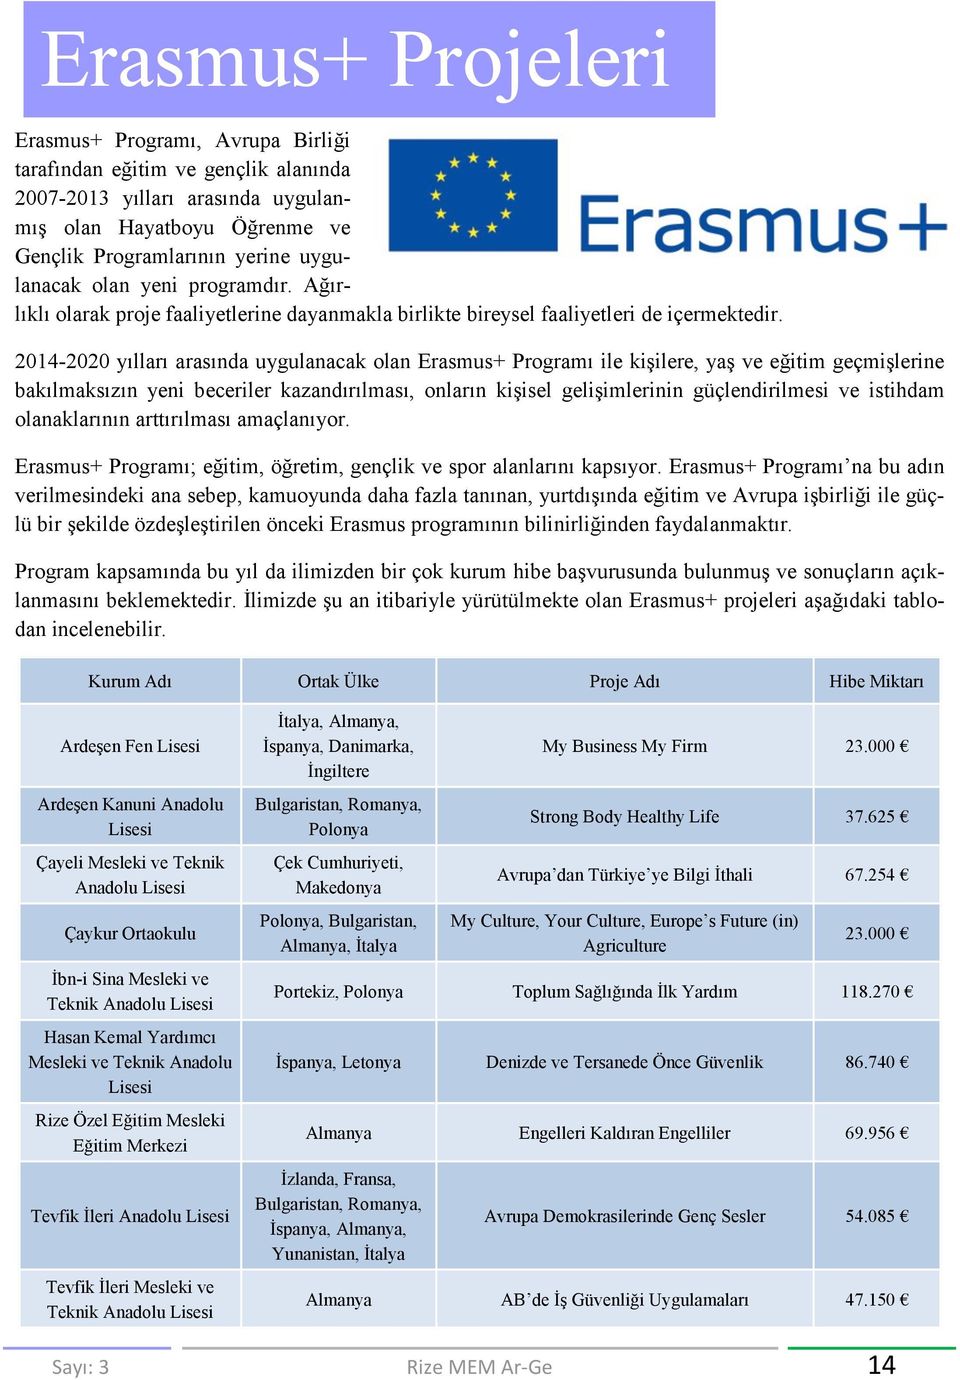 2014-2020 yılları arasında uygulanacak olan Erasmus+ Programı ile kişilere, yaş ve eğitim geçmişlerine bakılmaksızın yeni beceriler kazandırılması, onların kişisel gelişimlerinin güçlendirilmesi ve